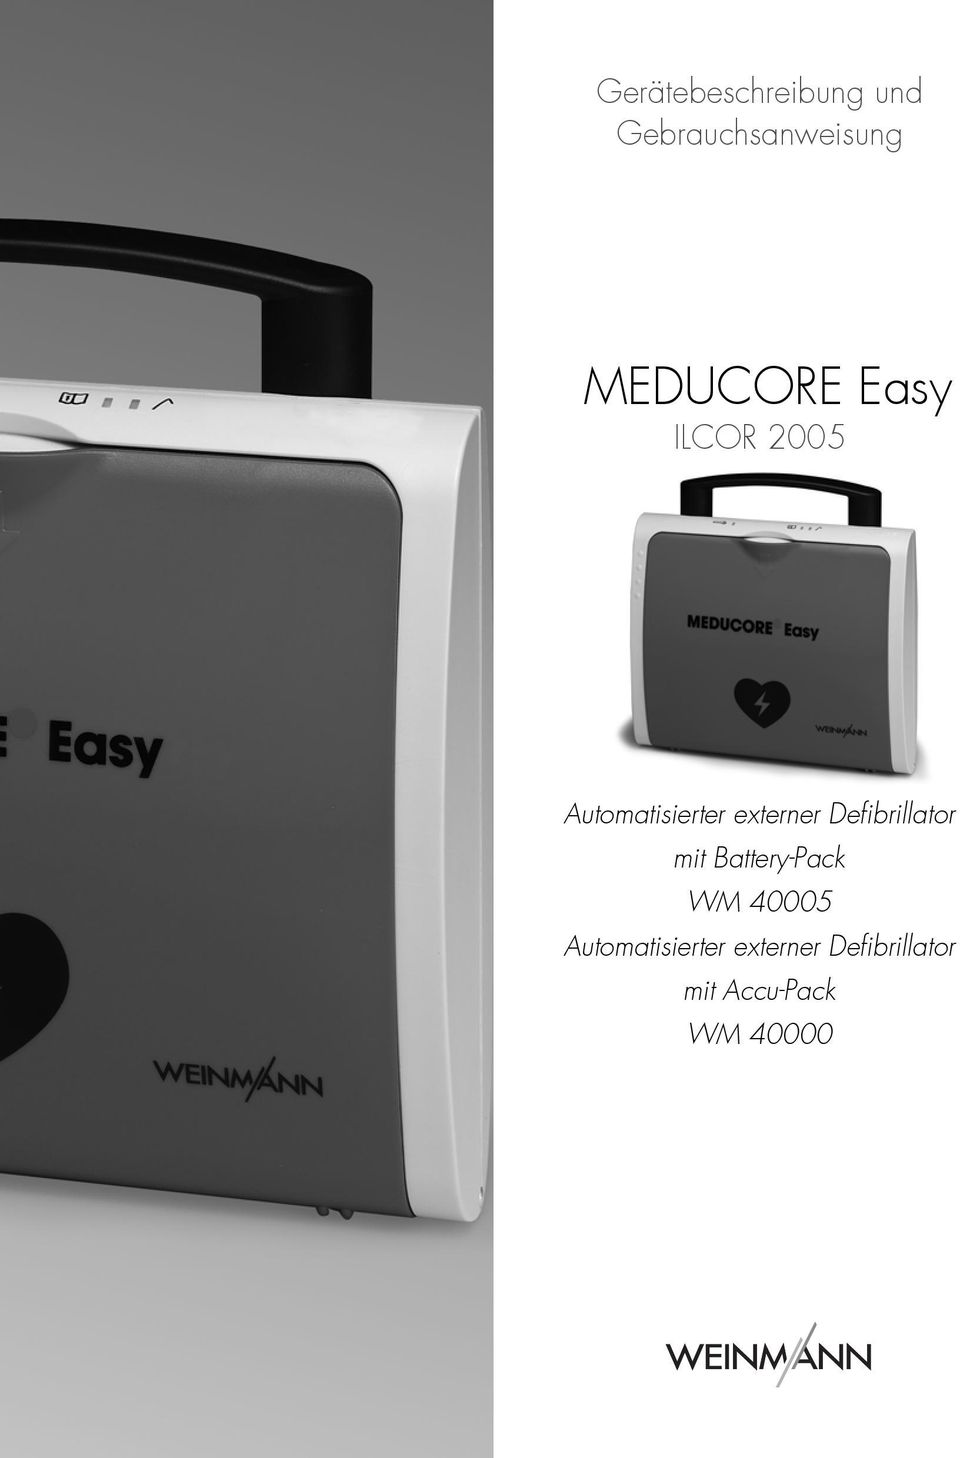 externer Defibrillator mit Battery-Pack WM 40005